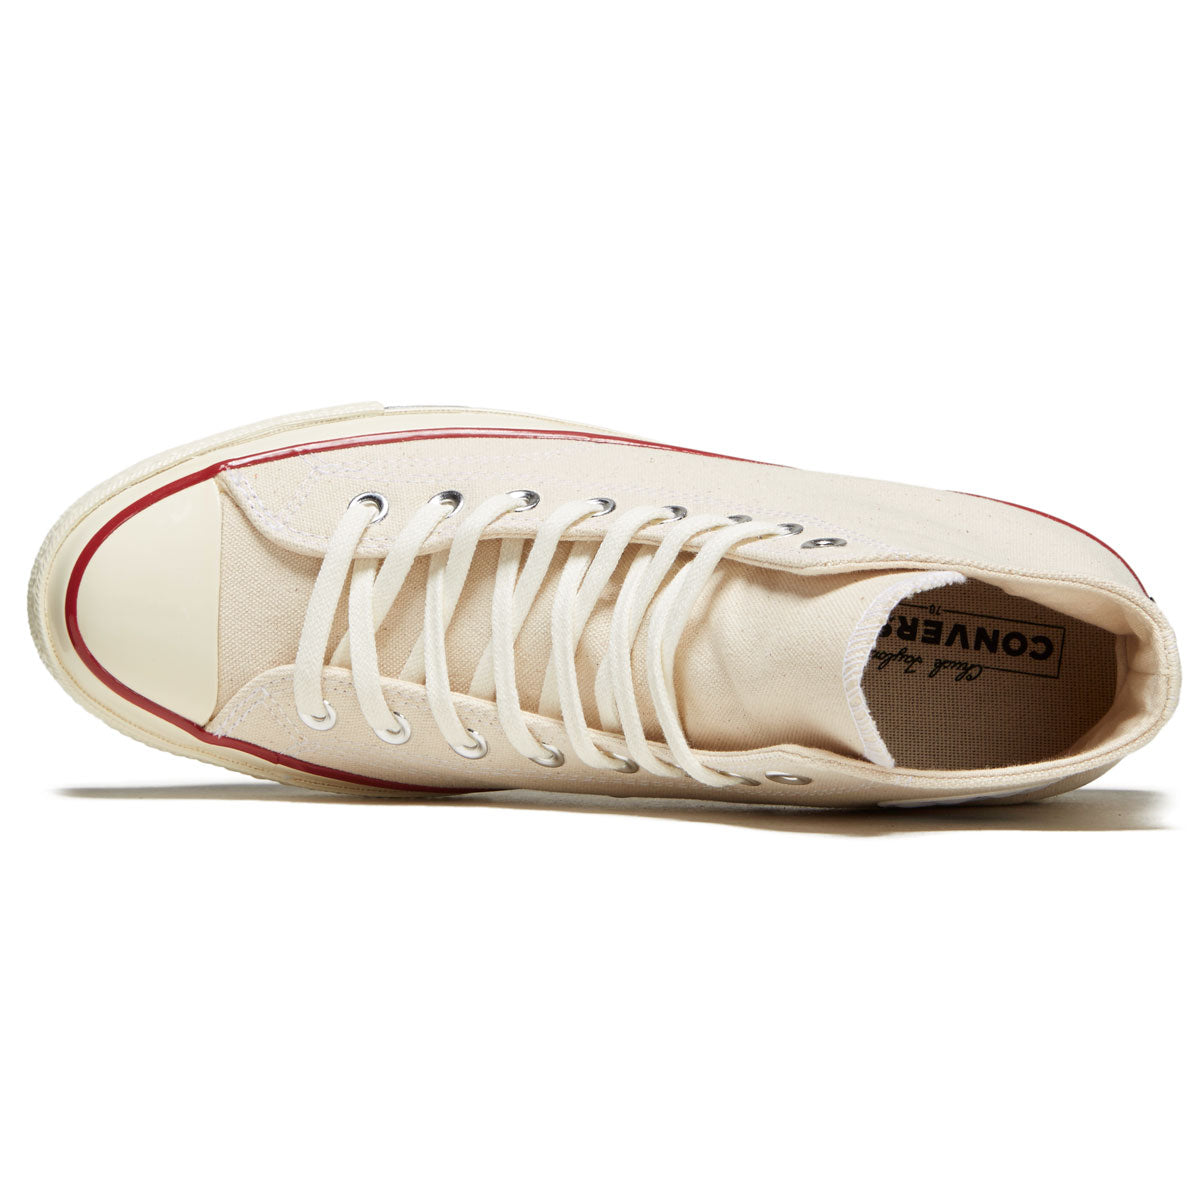 Converse Chuck 70 Hi Shoes - Parchment/Garnet/Egret image 3